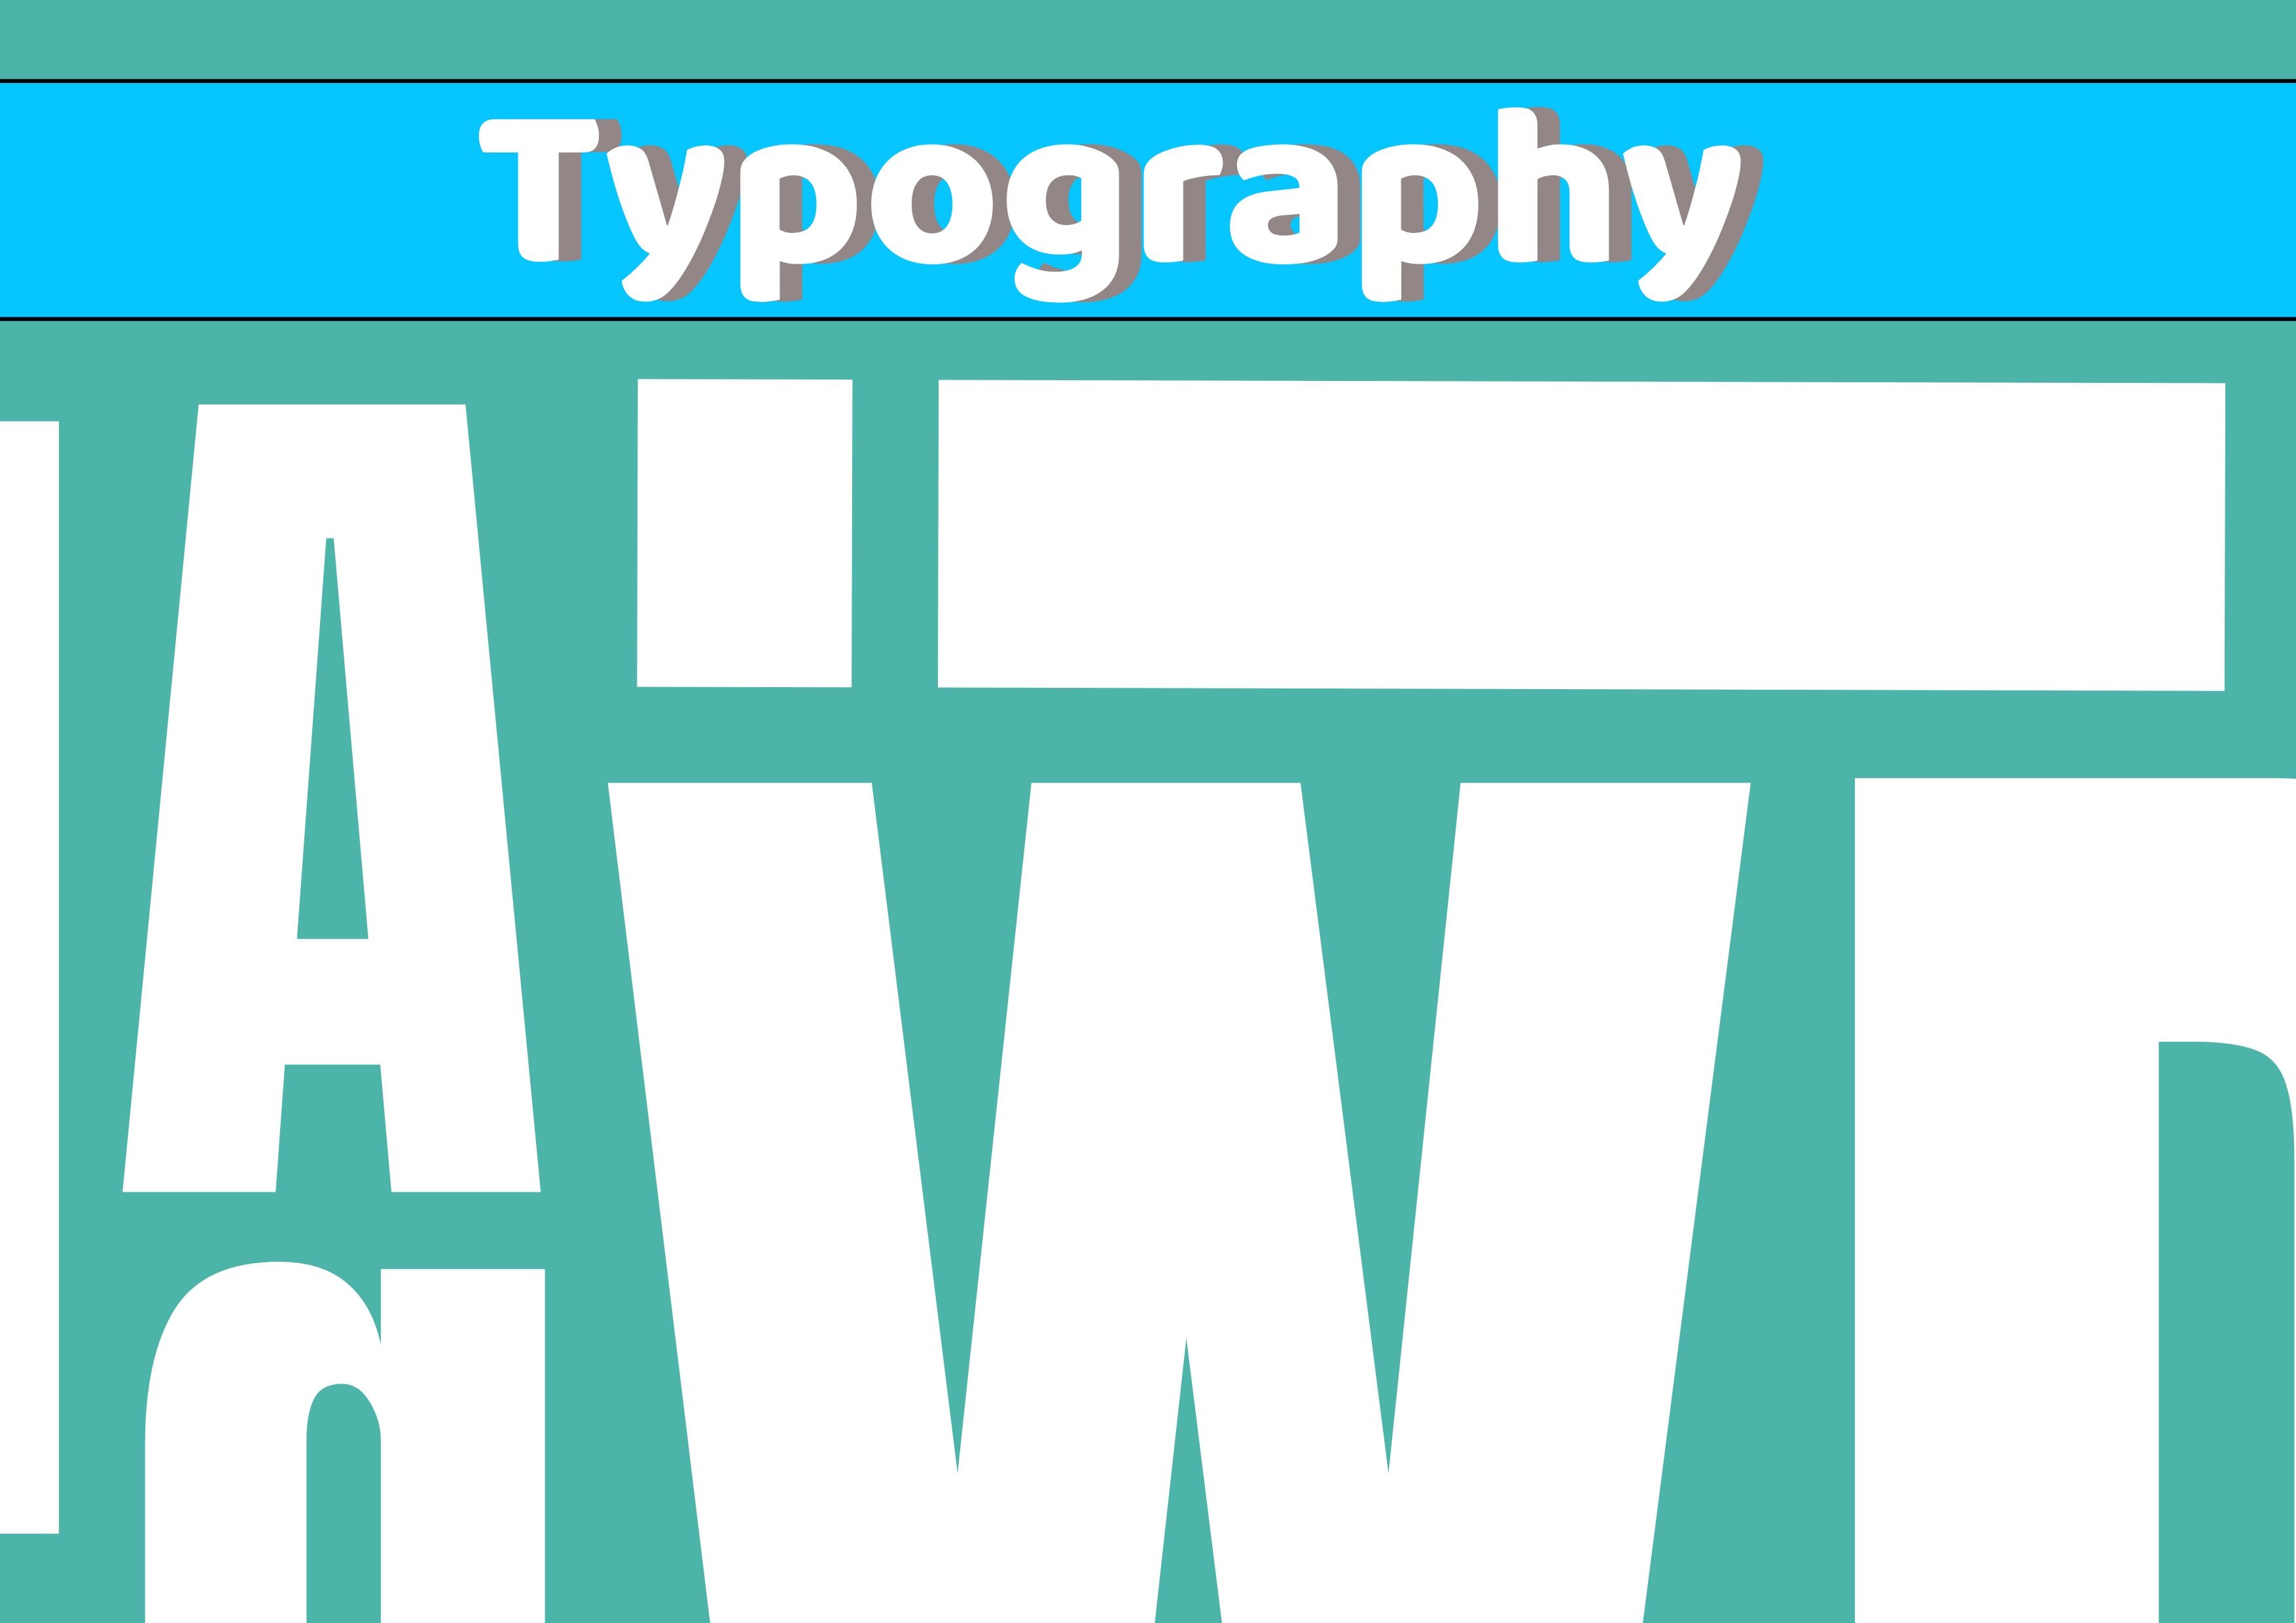 Imagen tipográfica con varias letras del alfabeto en blanco y de diferentes tamaños